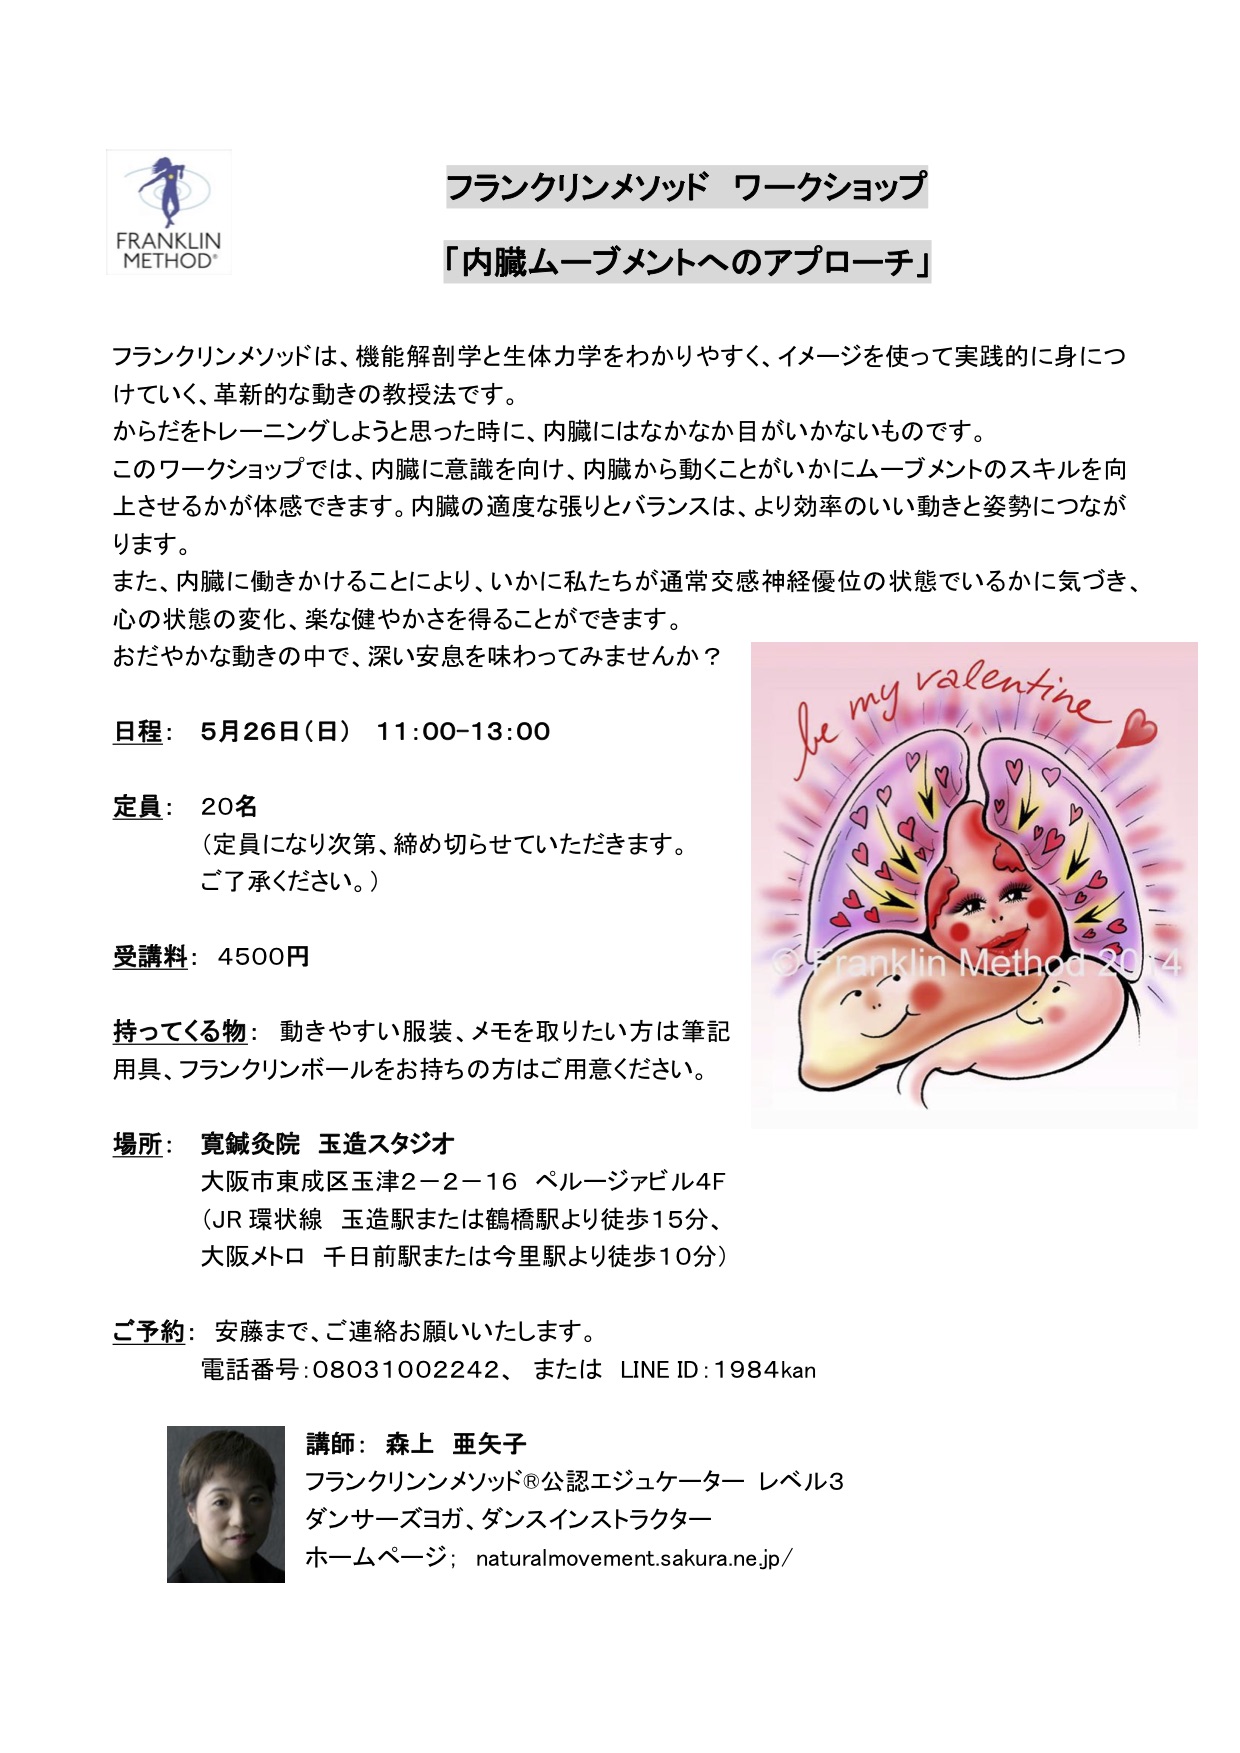 5/26(日)大阪 森上亜矢子WS「内臓ムーブメントへのアプローチ」